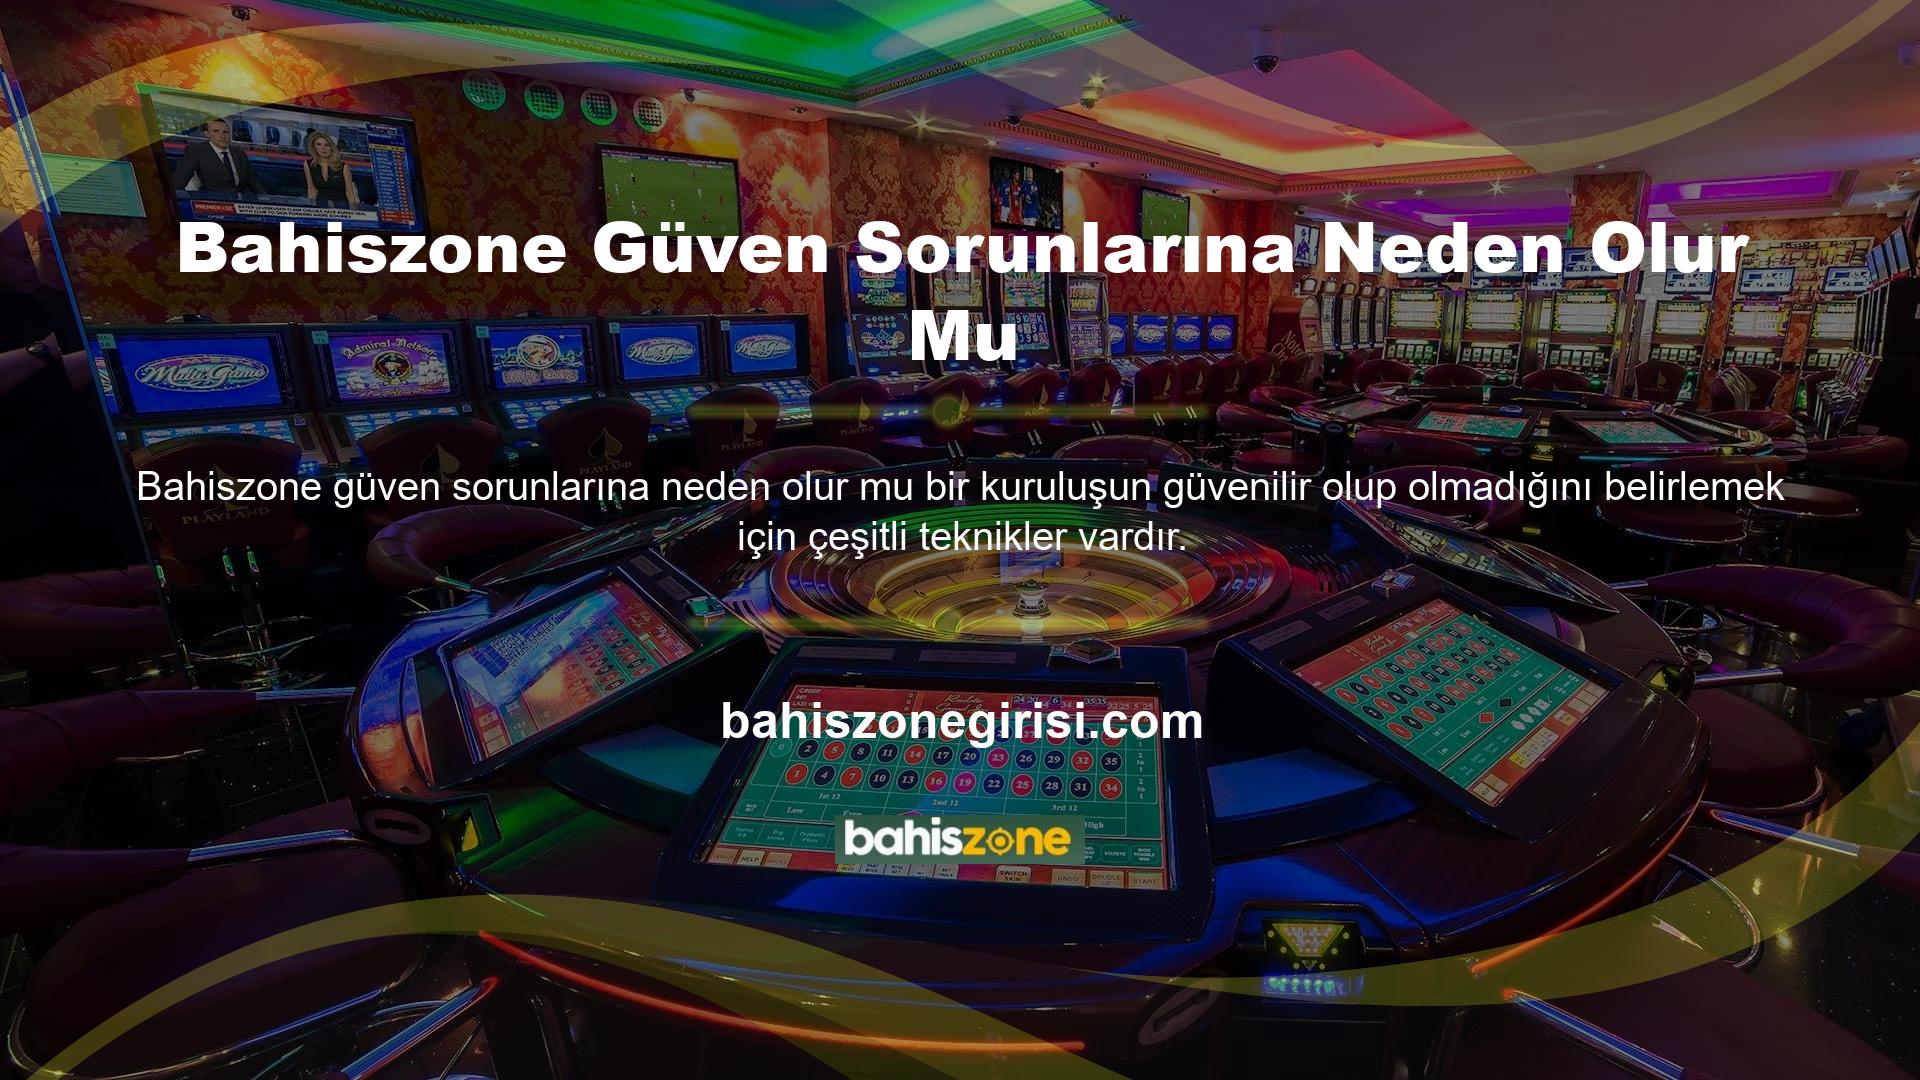 Öncelikle Bahiszone Casino’nun bu bölgede faaliyet gösterip gösteremeyeceğini kontrol etmeniz gerekiyor